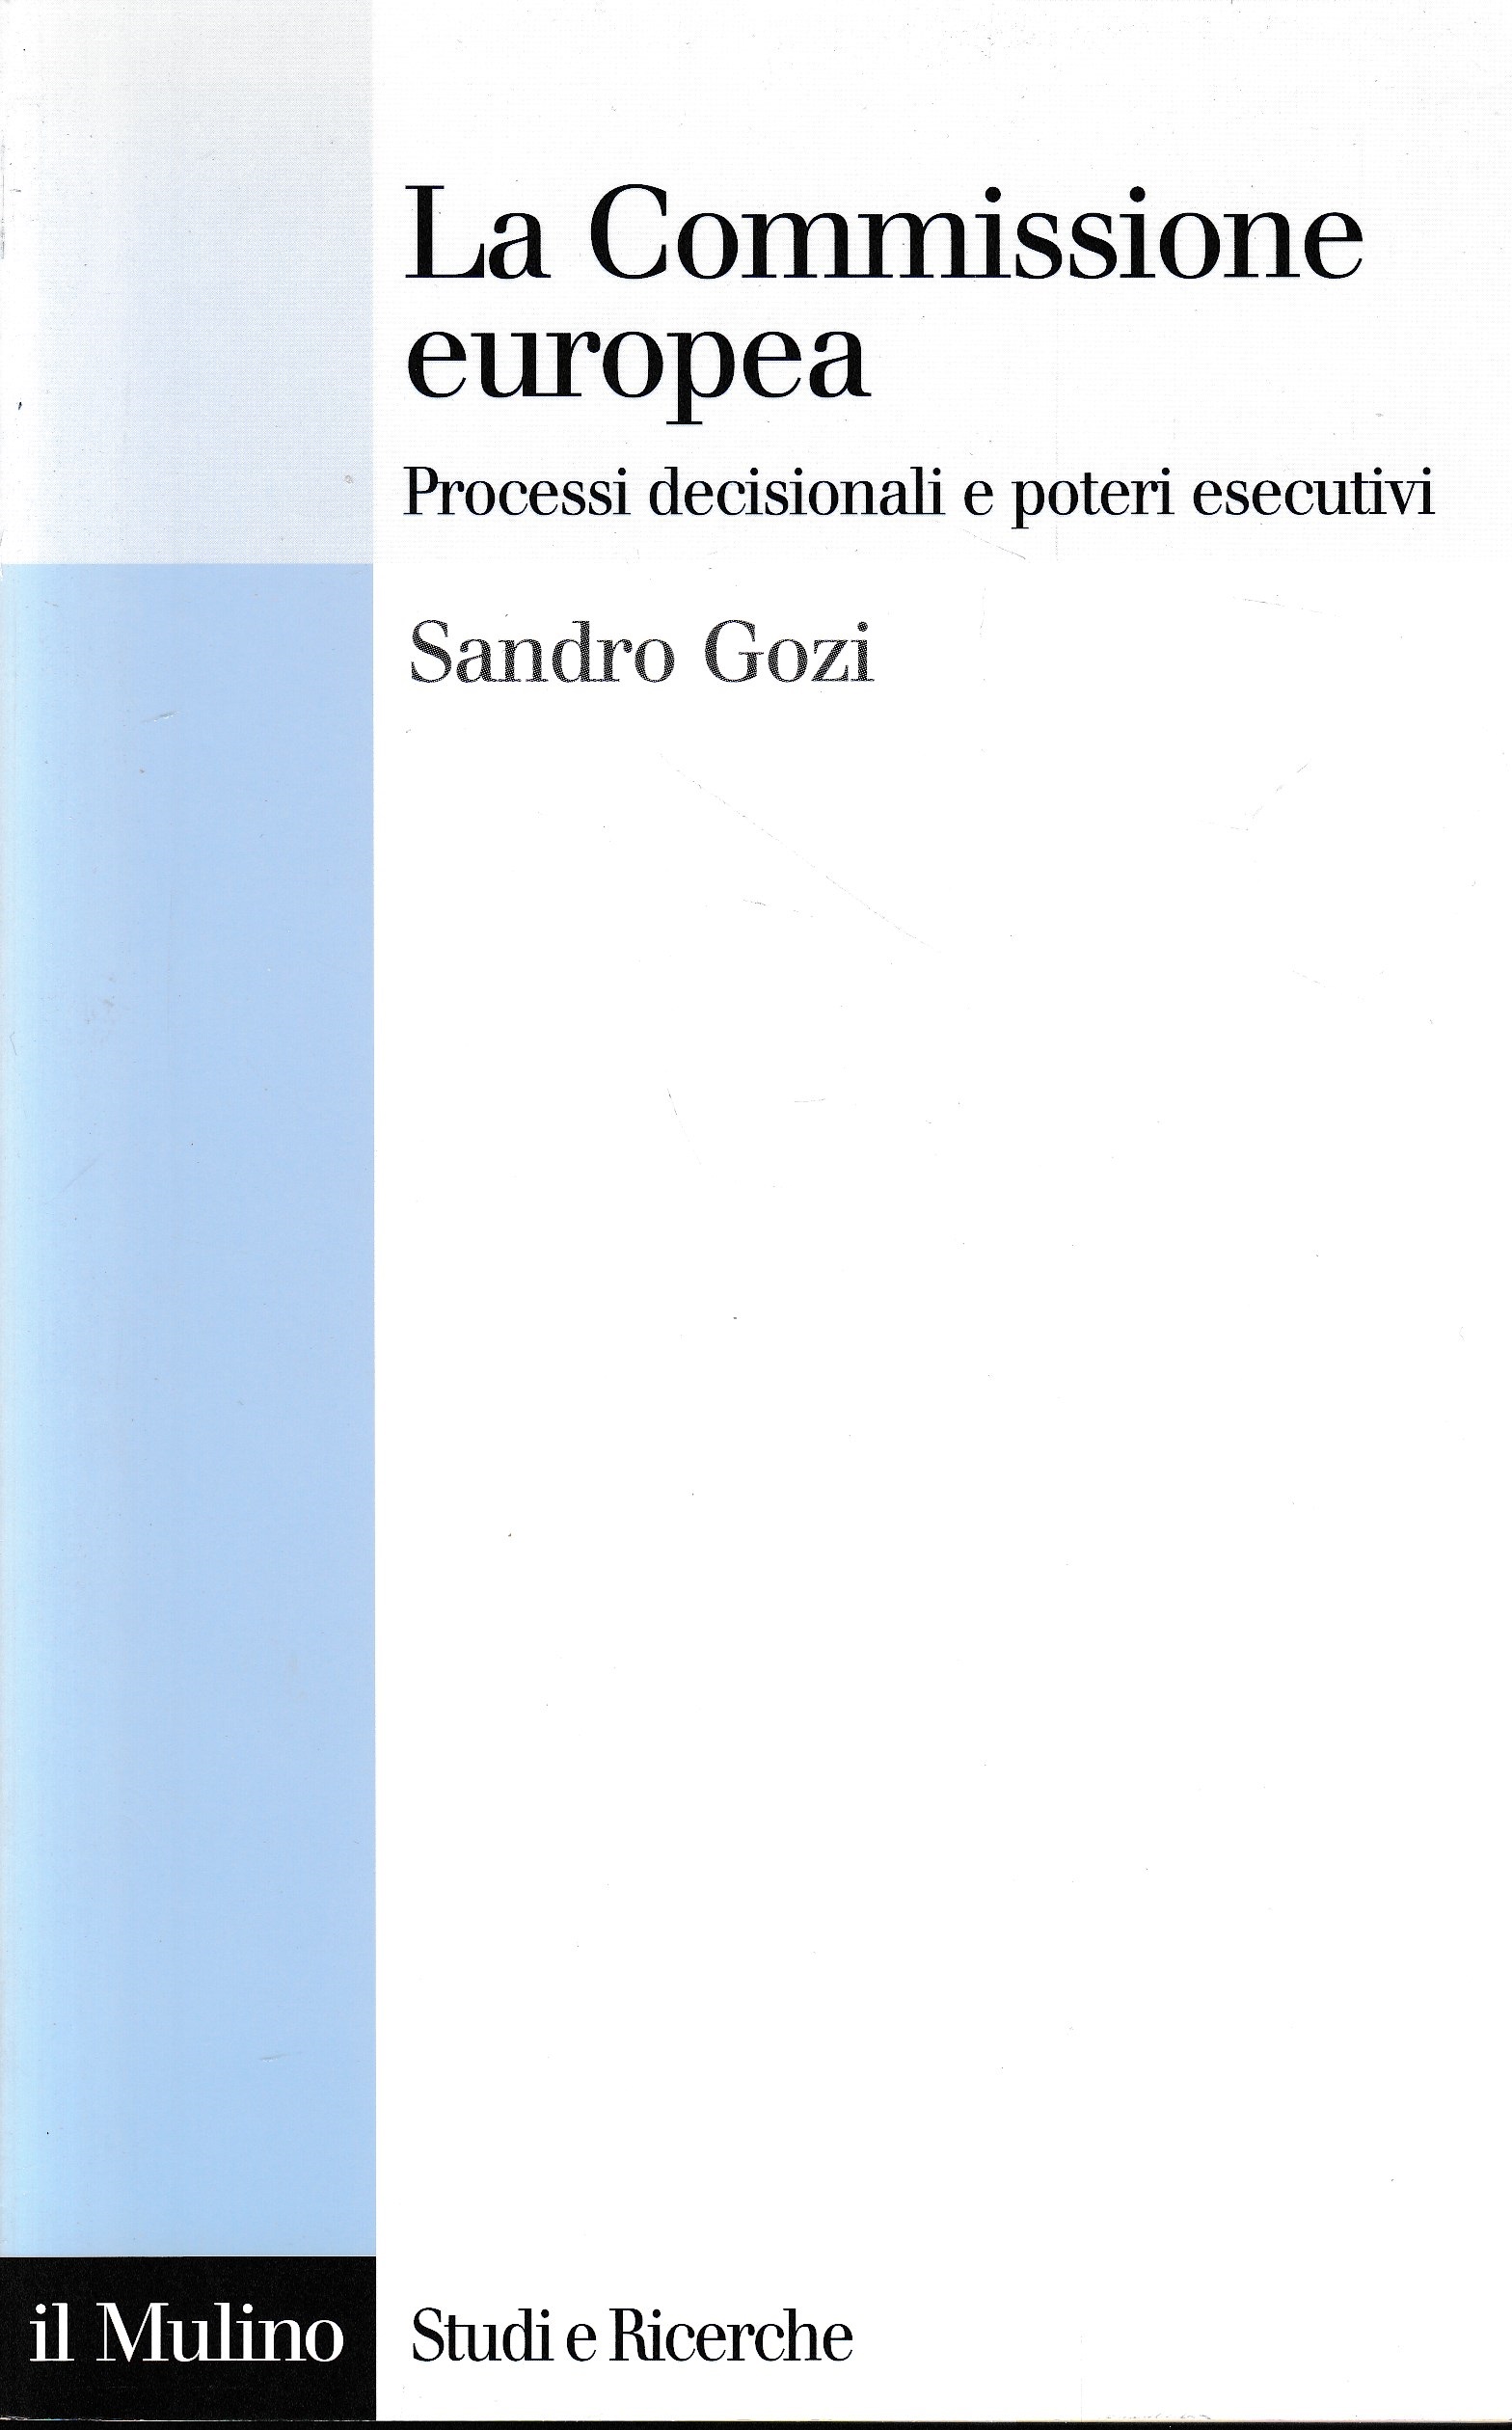 La Commissione europea. Processi decisionali e poteri esecutivi - Sandro Gozi